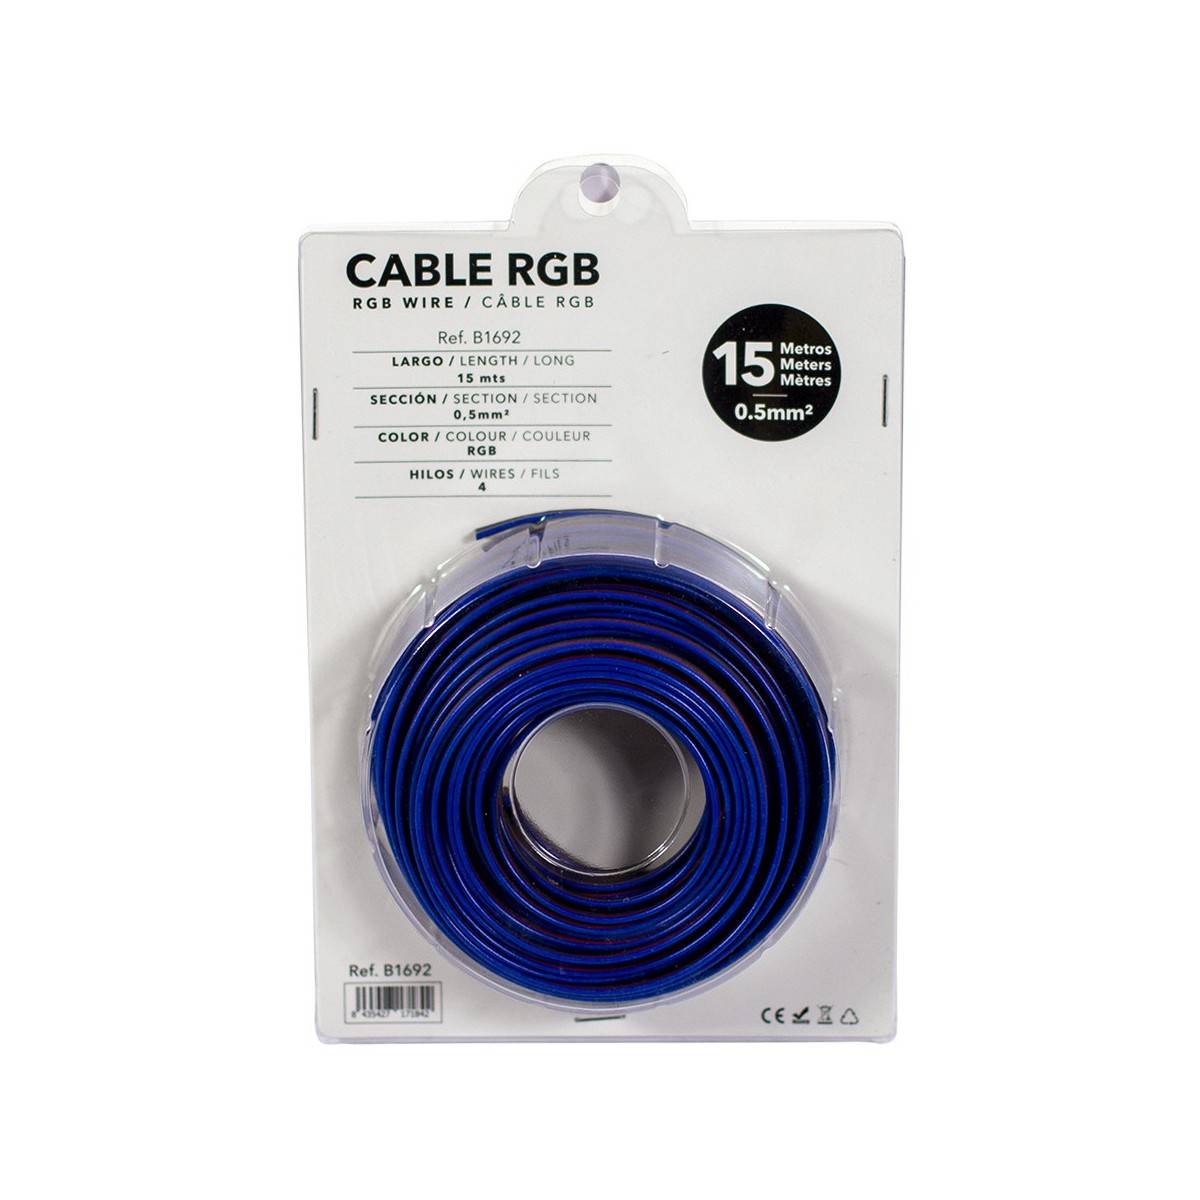 Cable RGB de 4 hilos para instalaciones a 12-24V